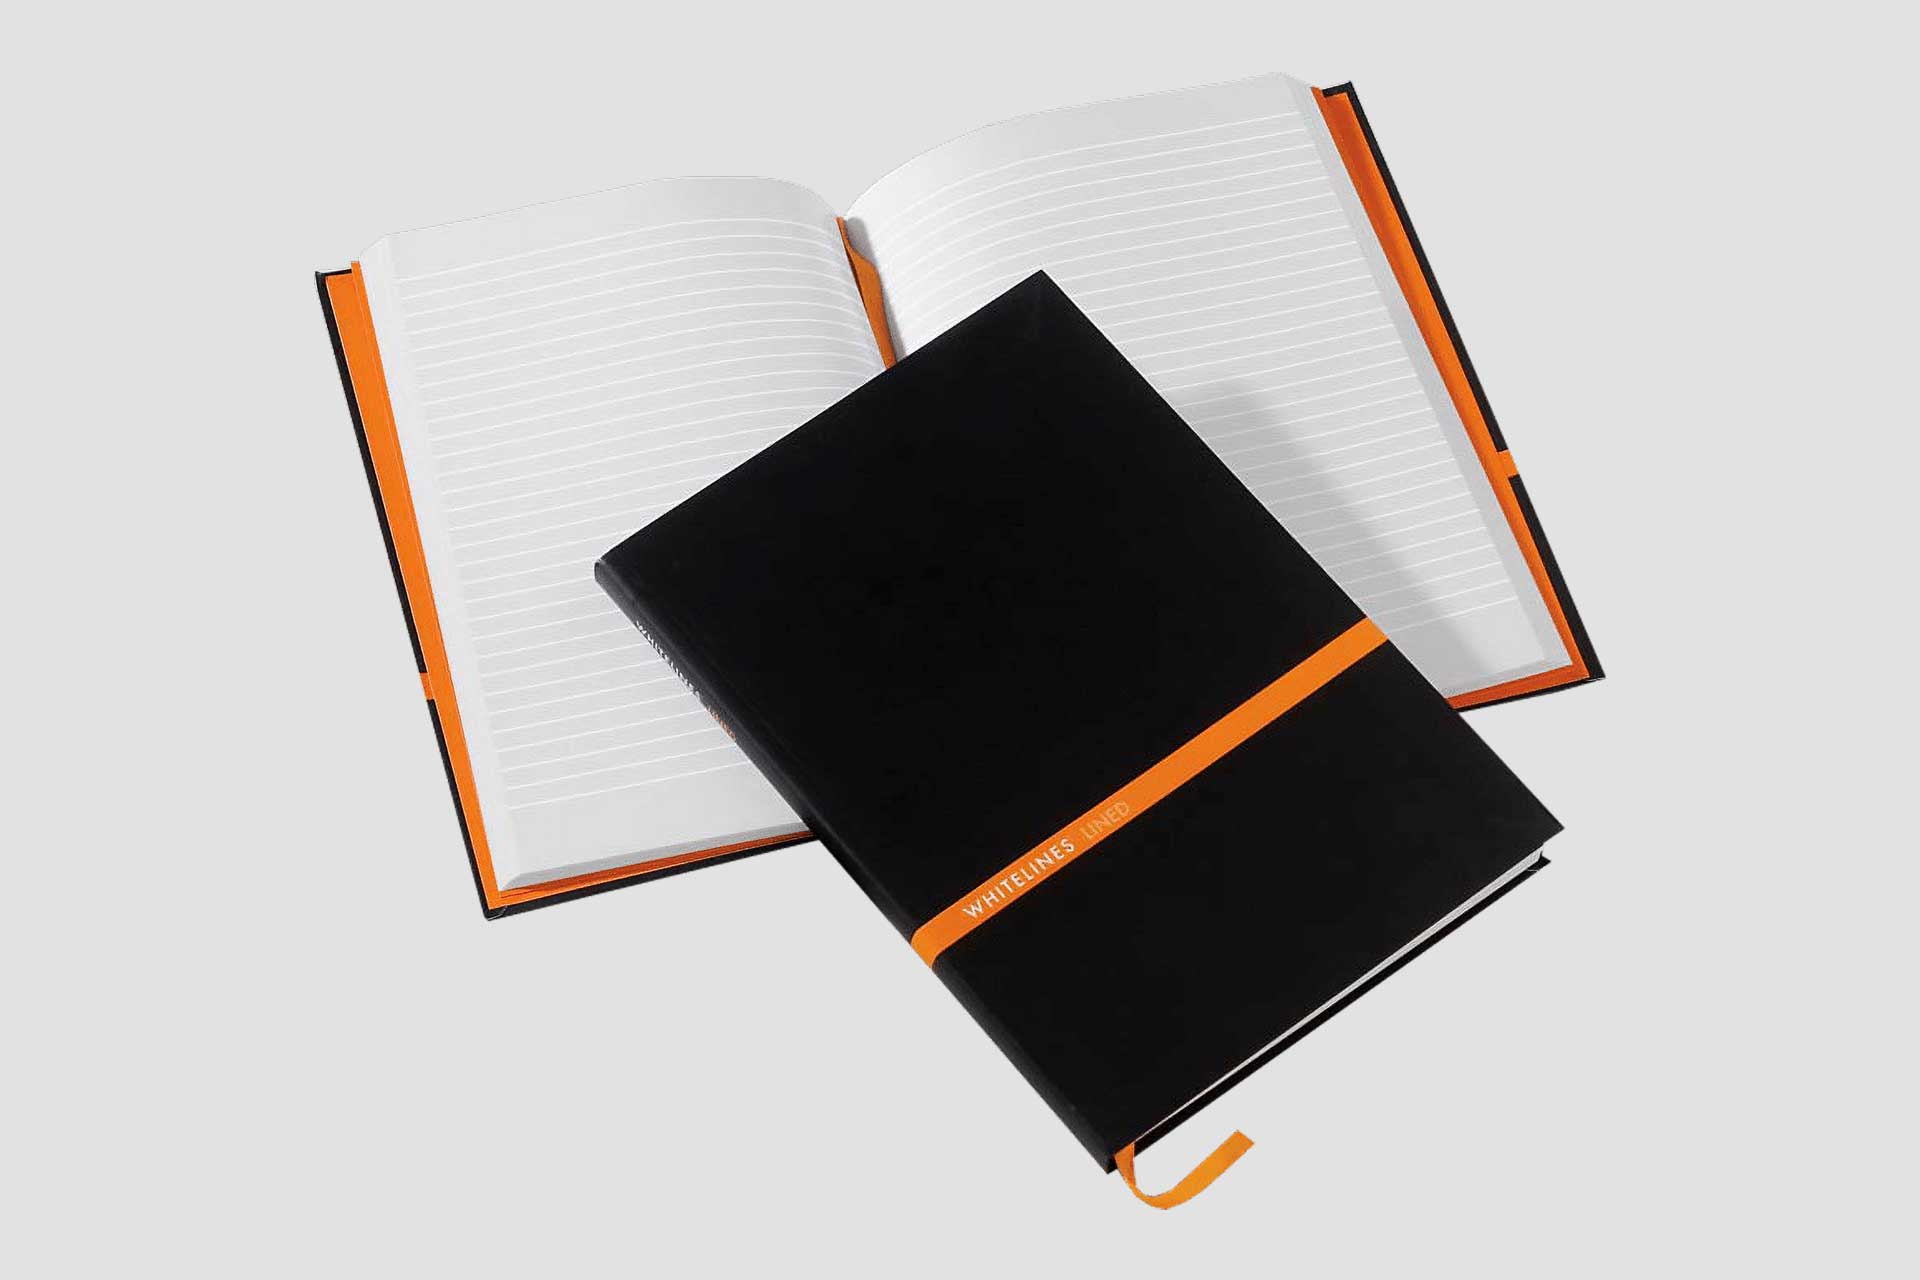 Opengeslagen notitieboek met papier met lijnen, daar op ligt een dicht notitieboek